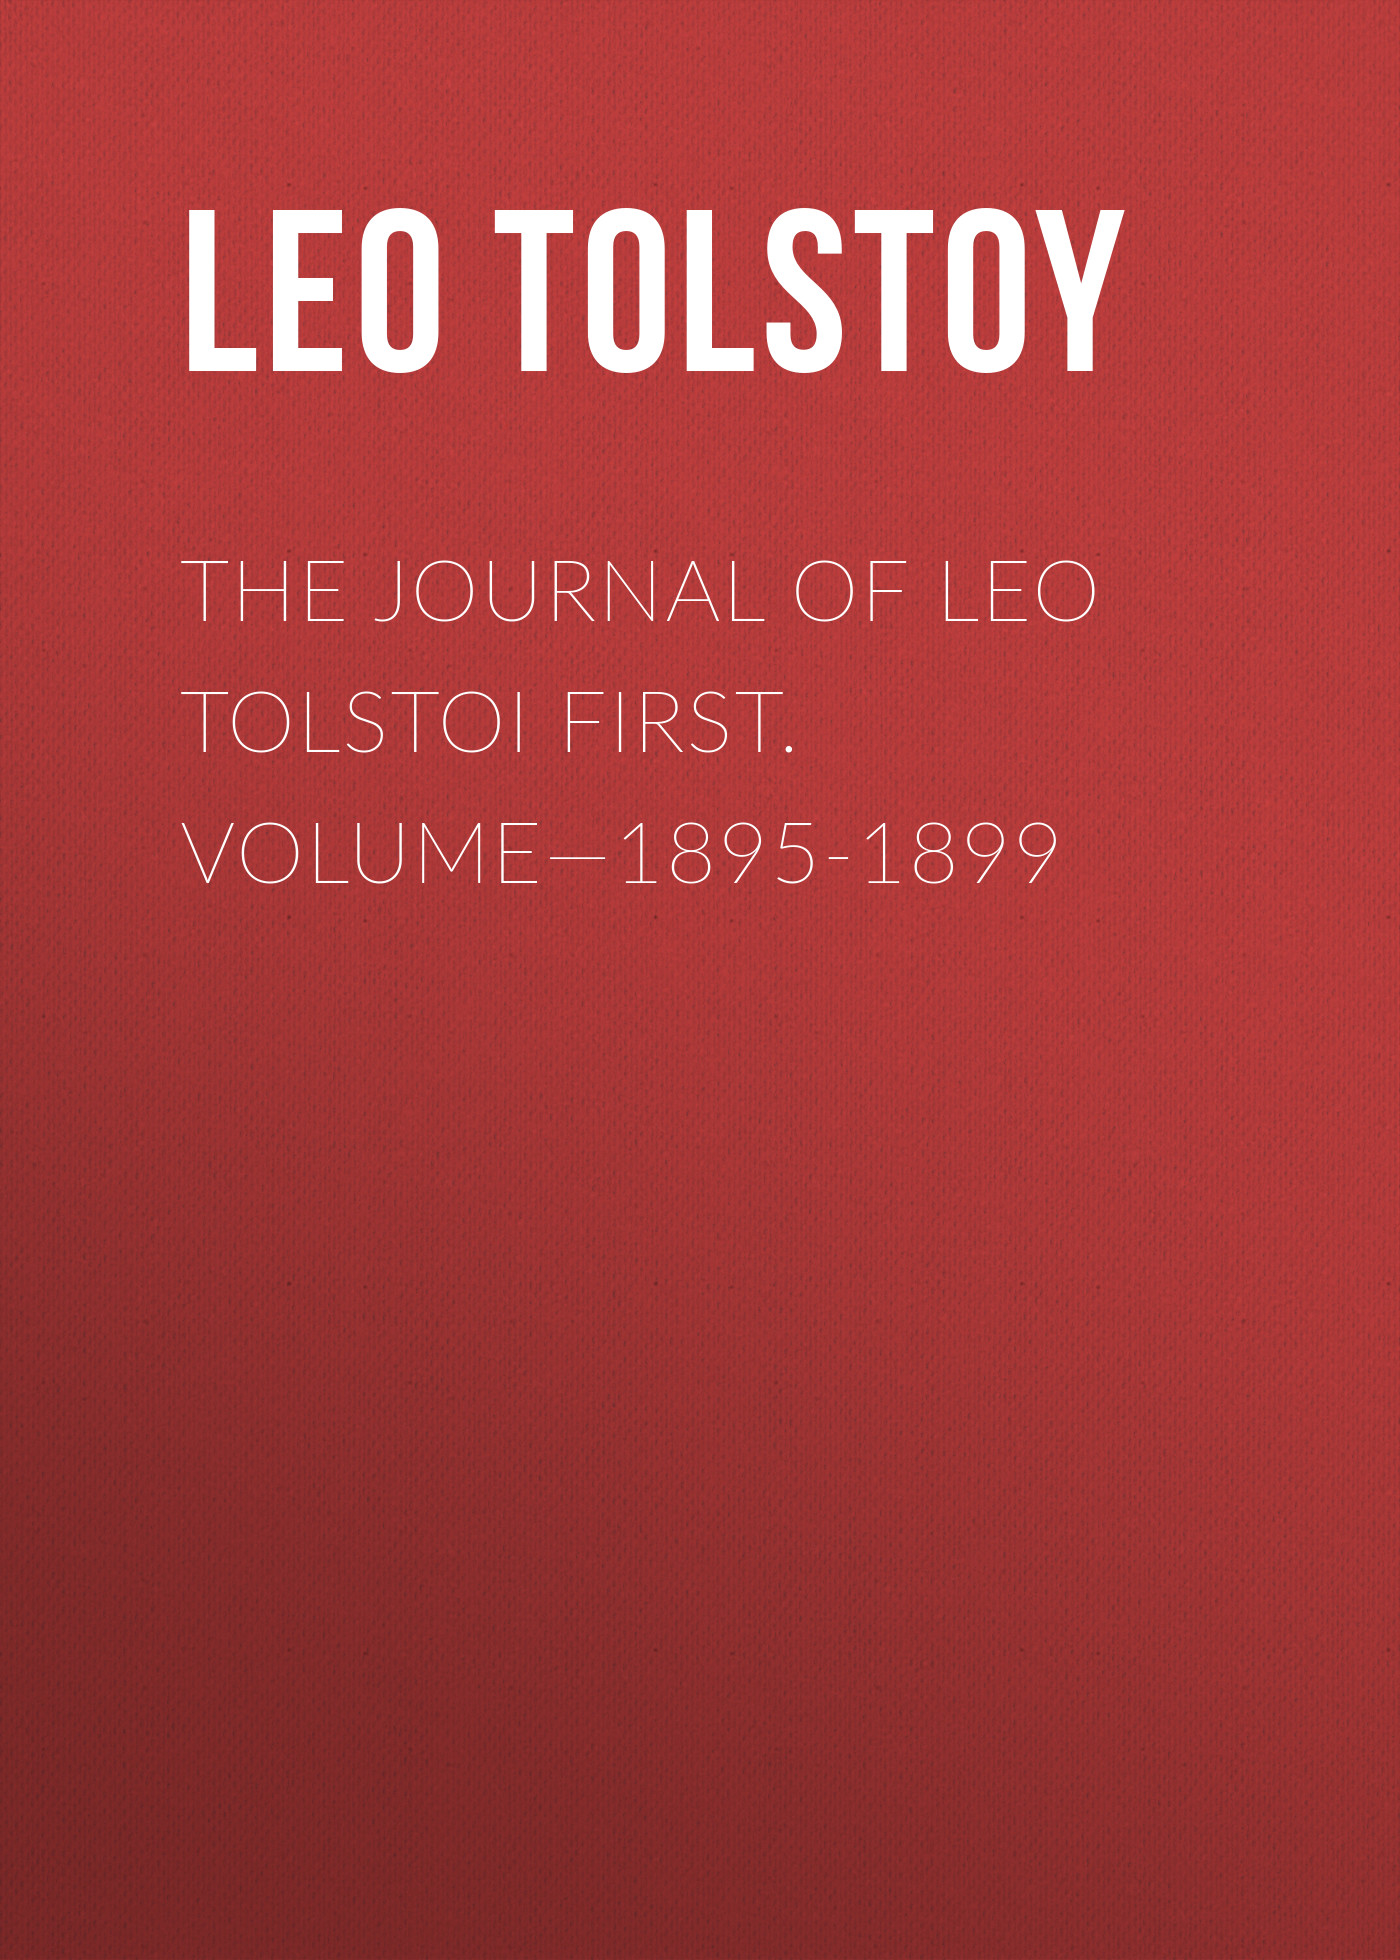 Книга The Journal of Leo Tolstoi First. Volume—1895-1899 из серии , созданная Leo Tolstoy, может относится к жанру Иностранные языки, Русская классика. Стоимость электронной книги The Journal of Leo Tolstoi First. Volume—1895-1899 с идентификатором 23144779 составляет 0 руб.